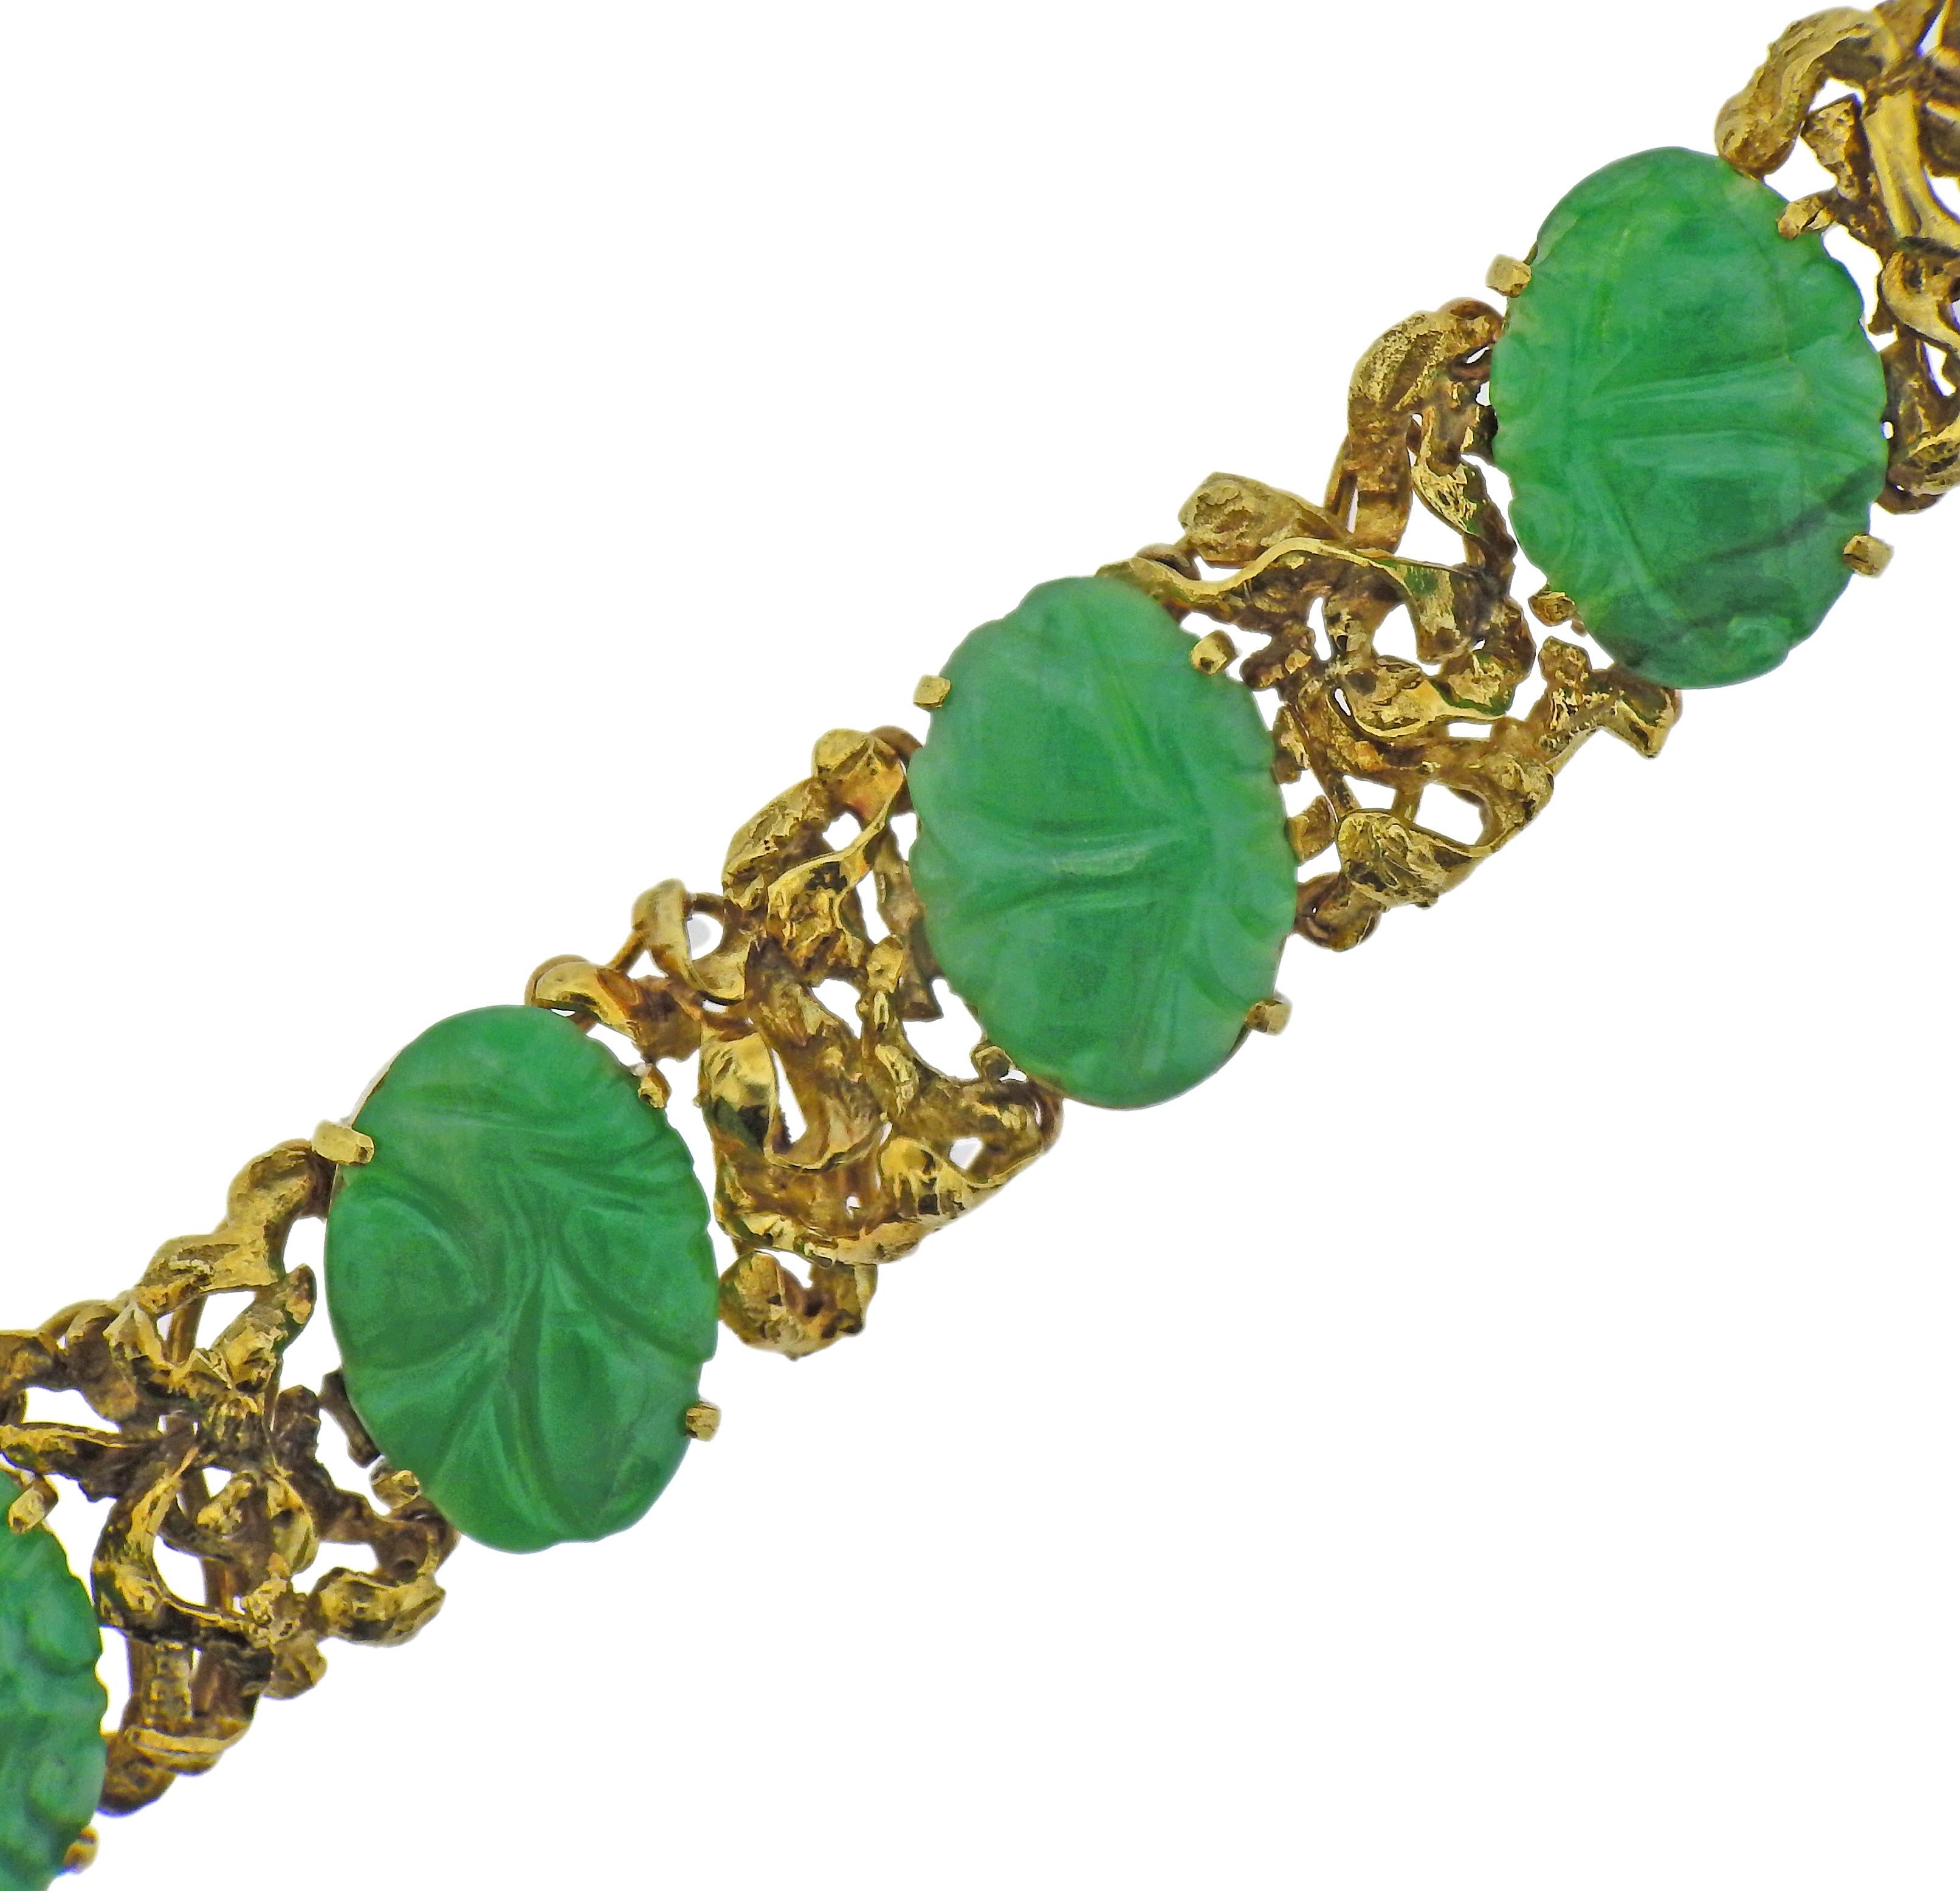 Armband aus 18 Karat Gelbgold mit geschnitzter Jade. Das Armband ist 7